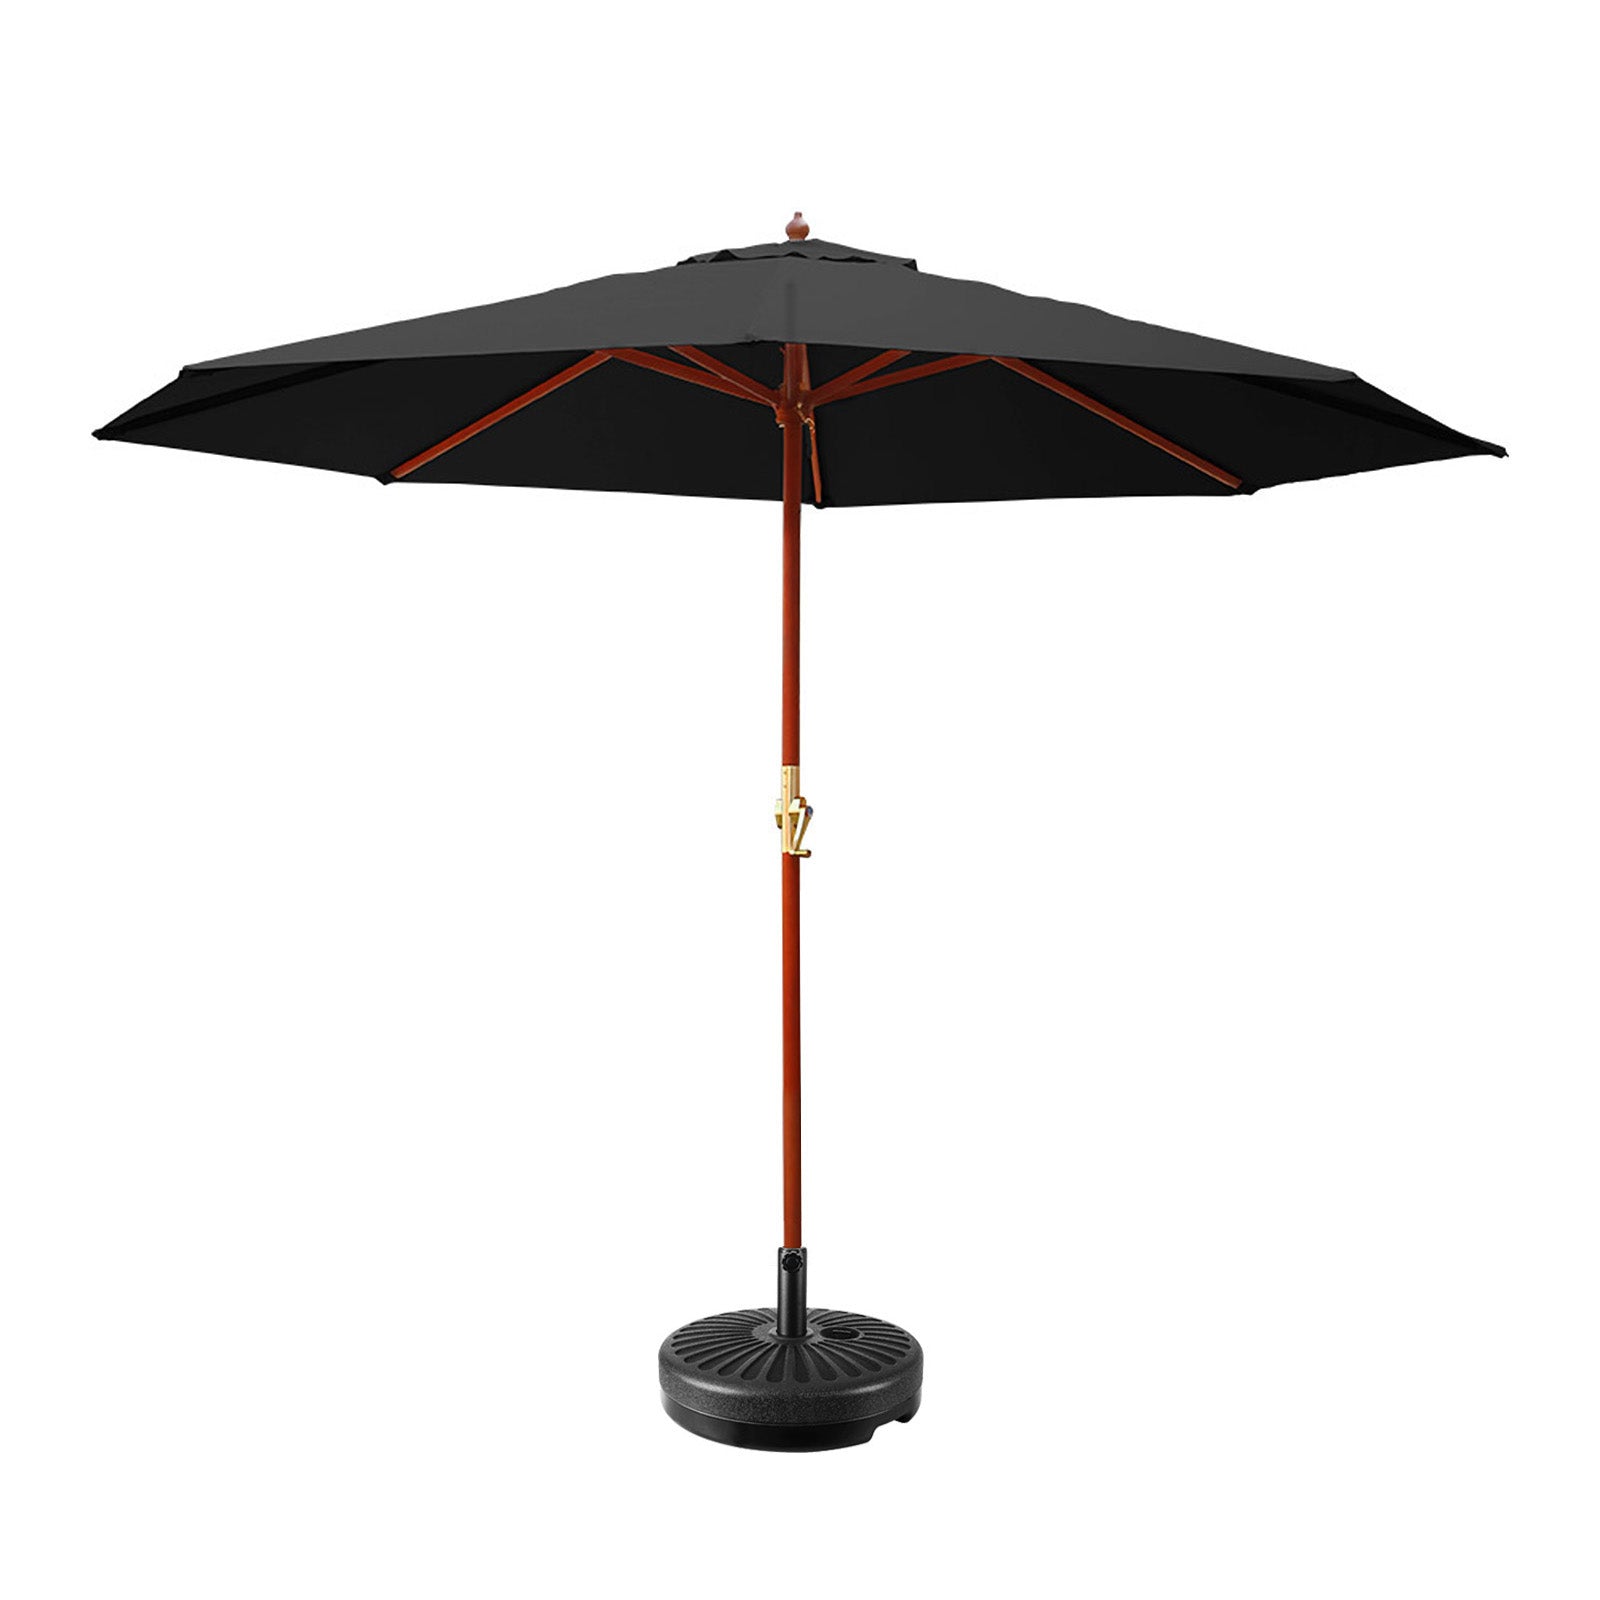 Instahut 3M Umbrella with Base Outdoor Pole Umbrellas Garden Stand Deck Black